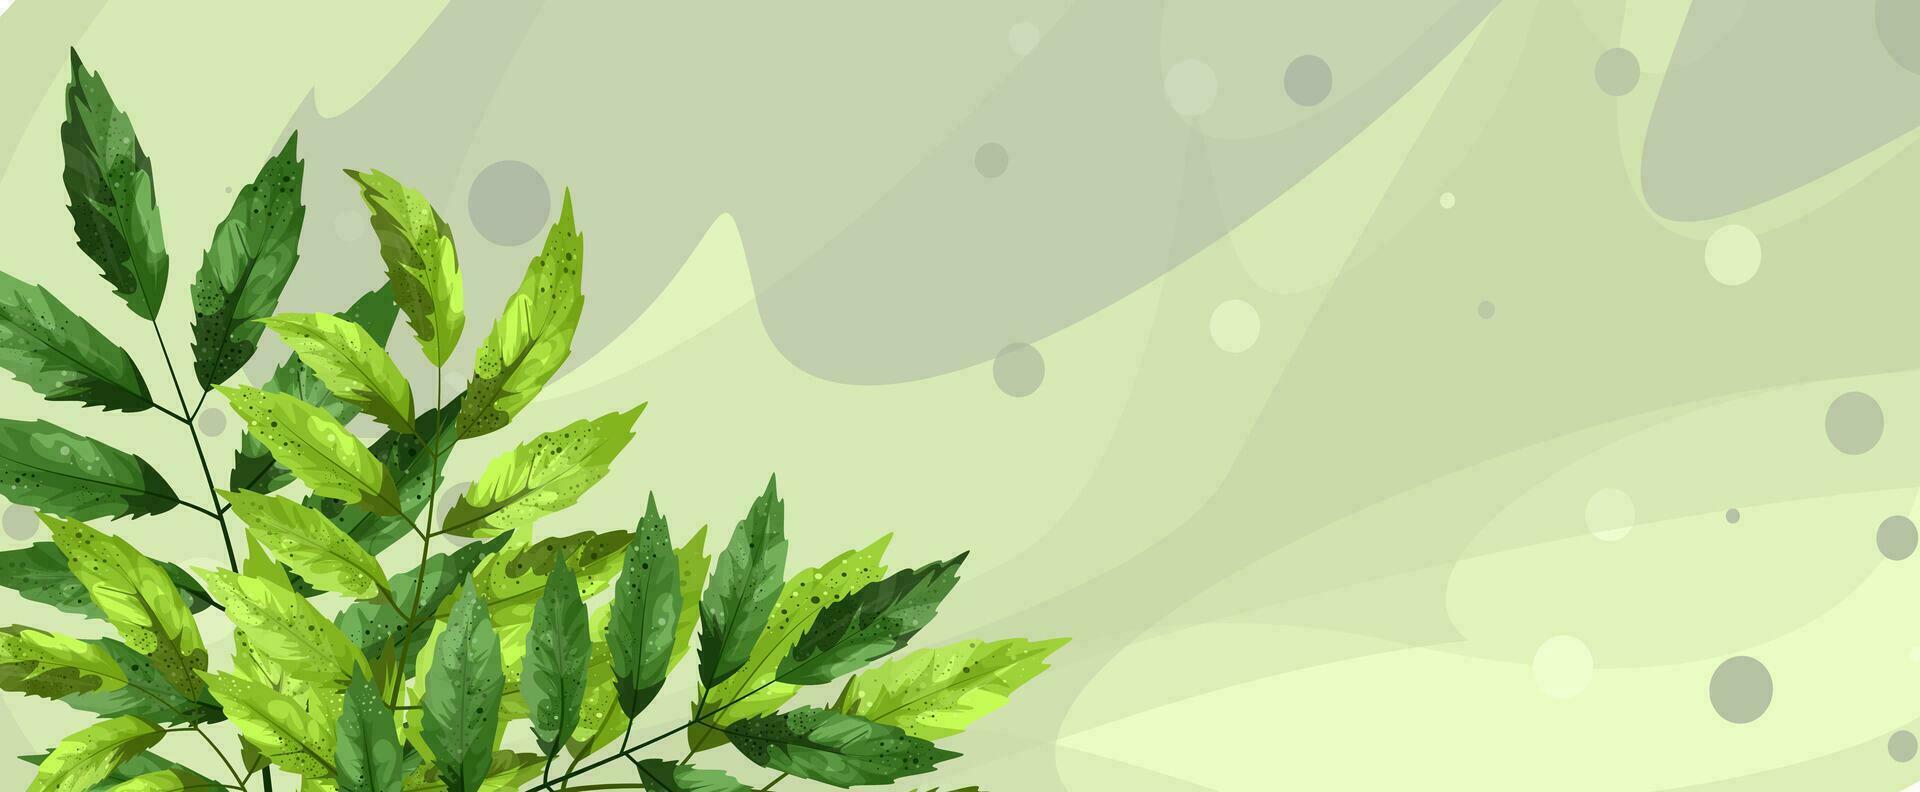 ein Vektor Bild von ein laubabwerfend Pflanze einstellen gegen ein blattartig Muster mit eingestreut Blätter. handgemalt. Karikatur